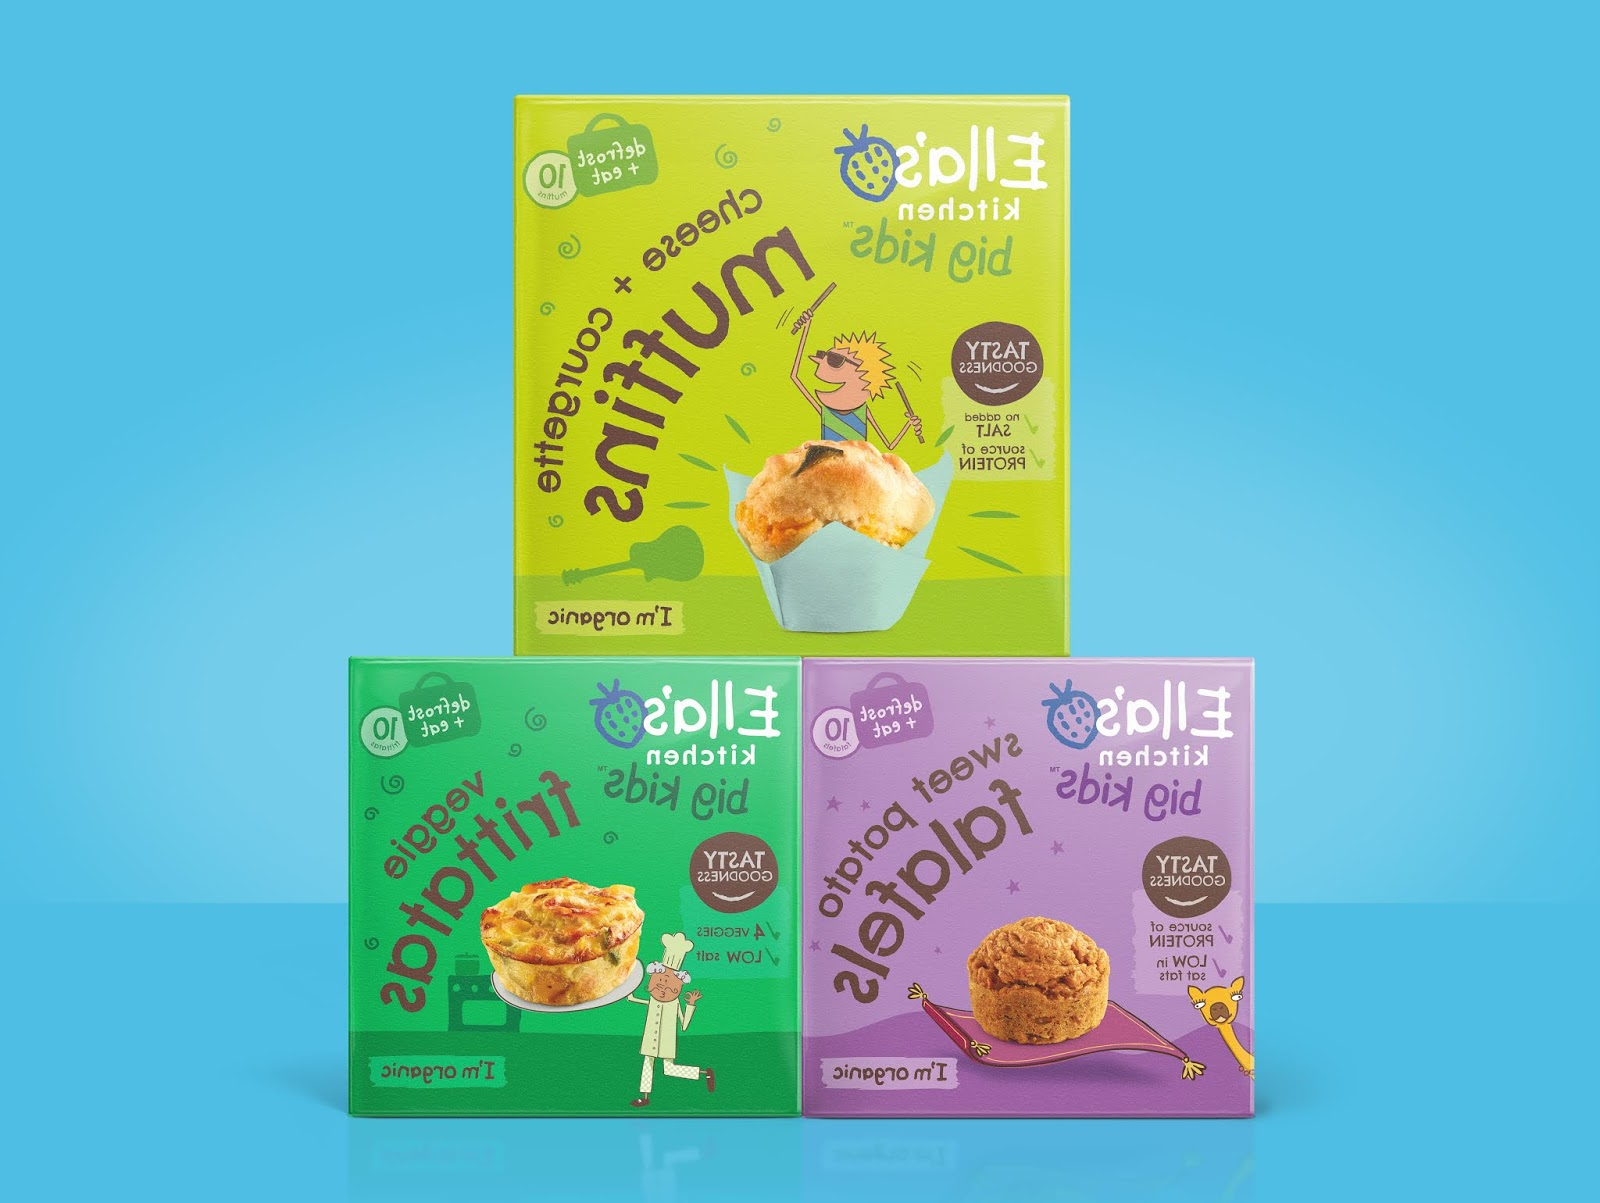 婴儿食品包装设计西安欧亿体育‧（官方）平台网站
品牌包装设计